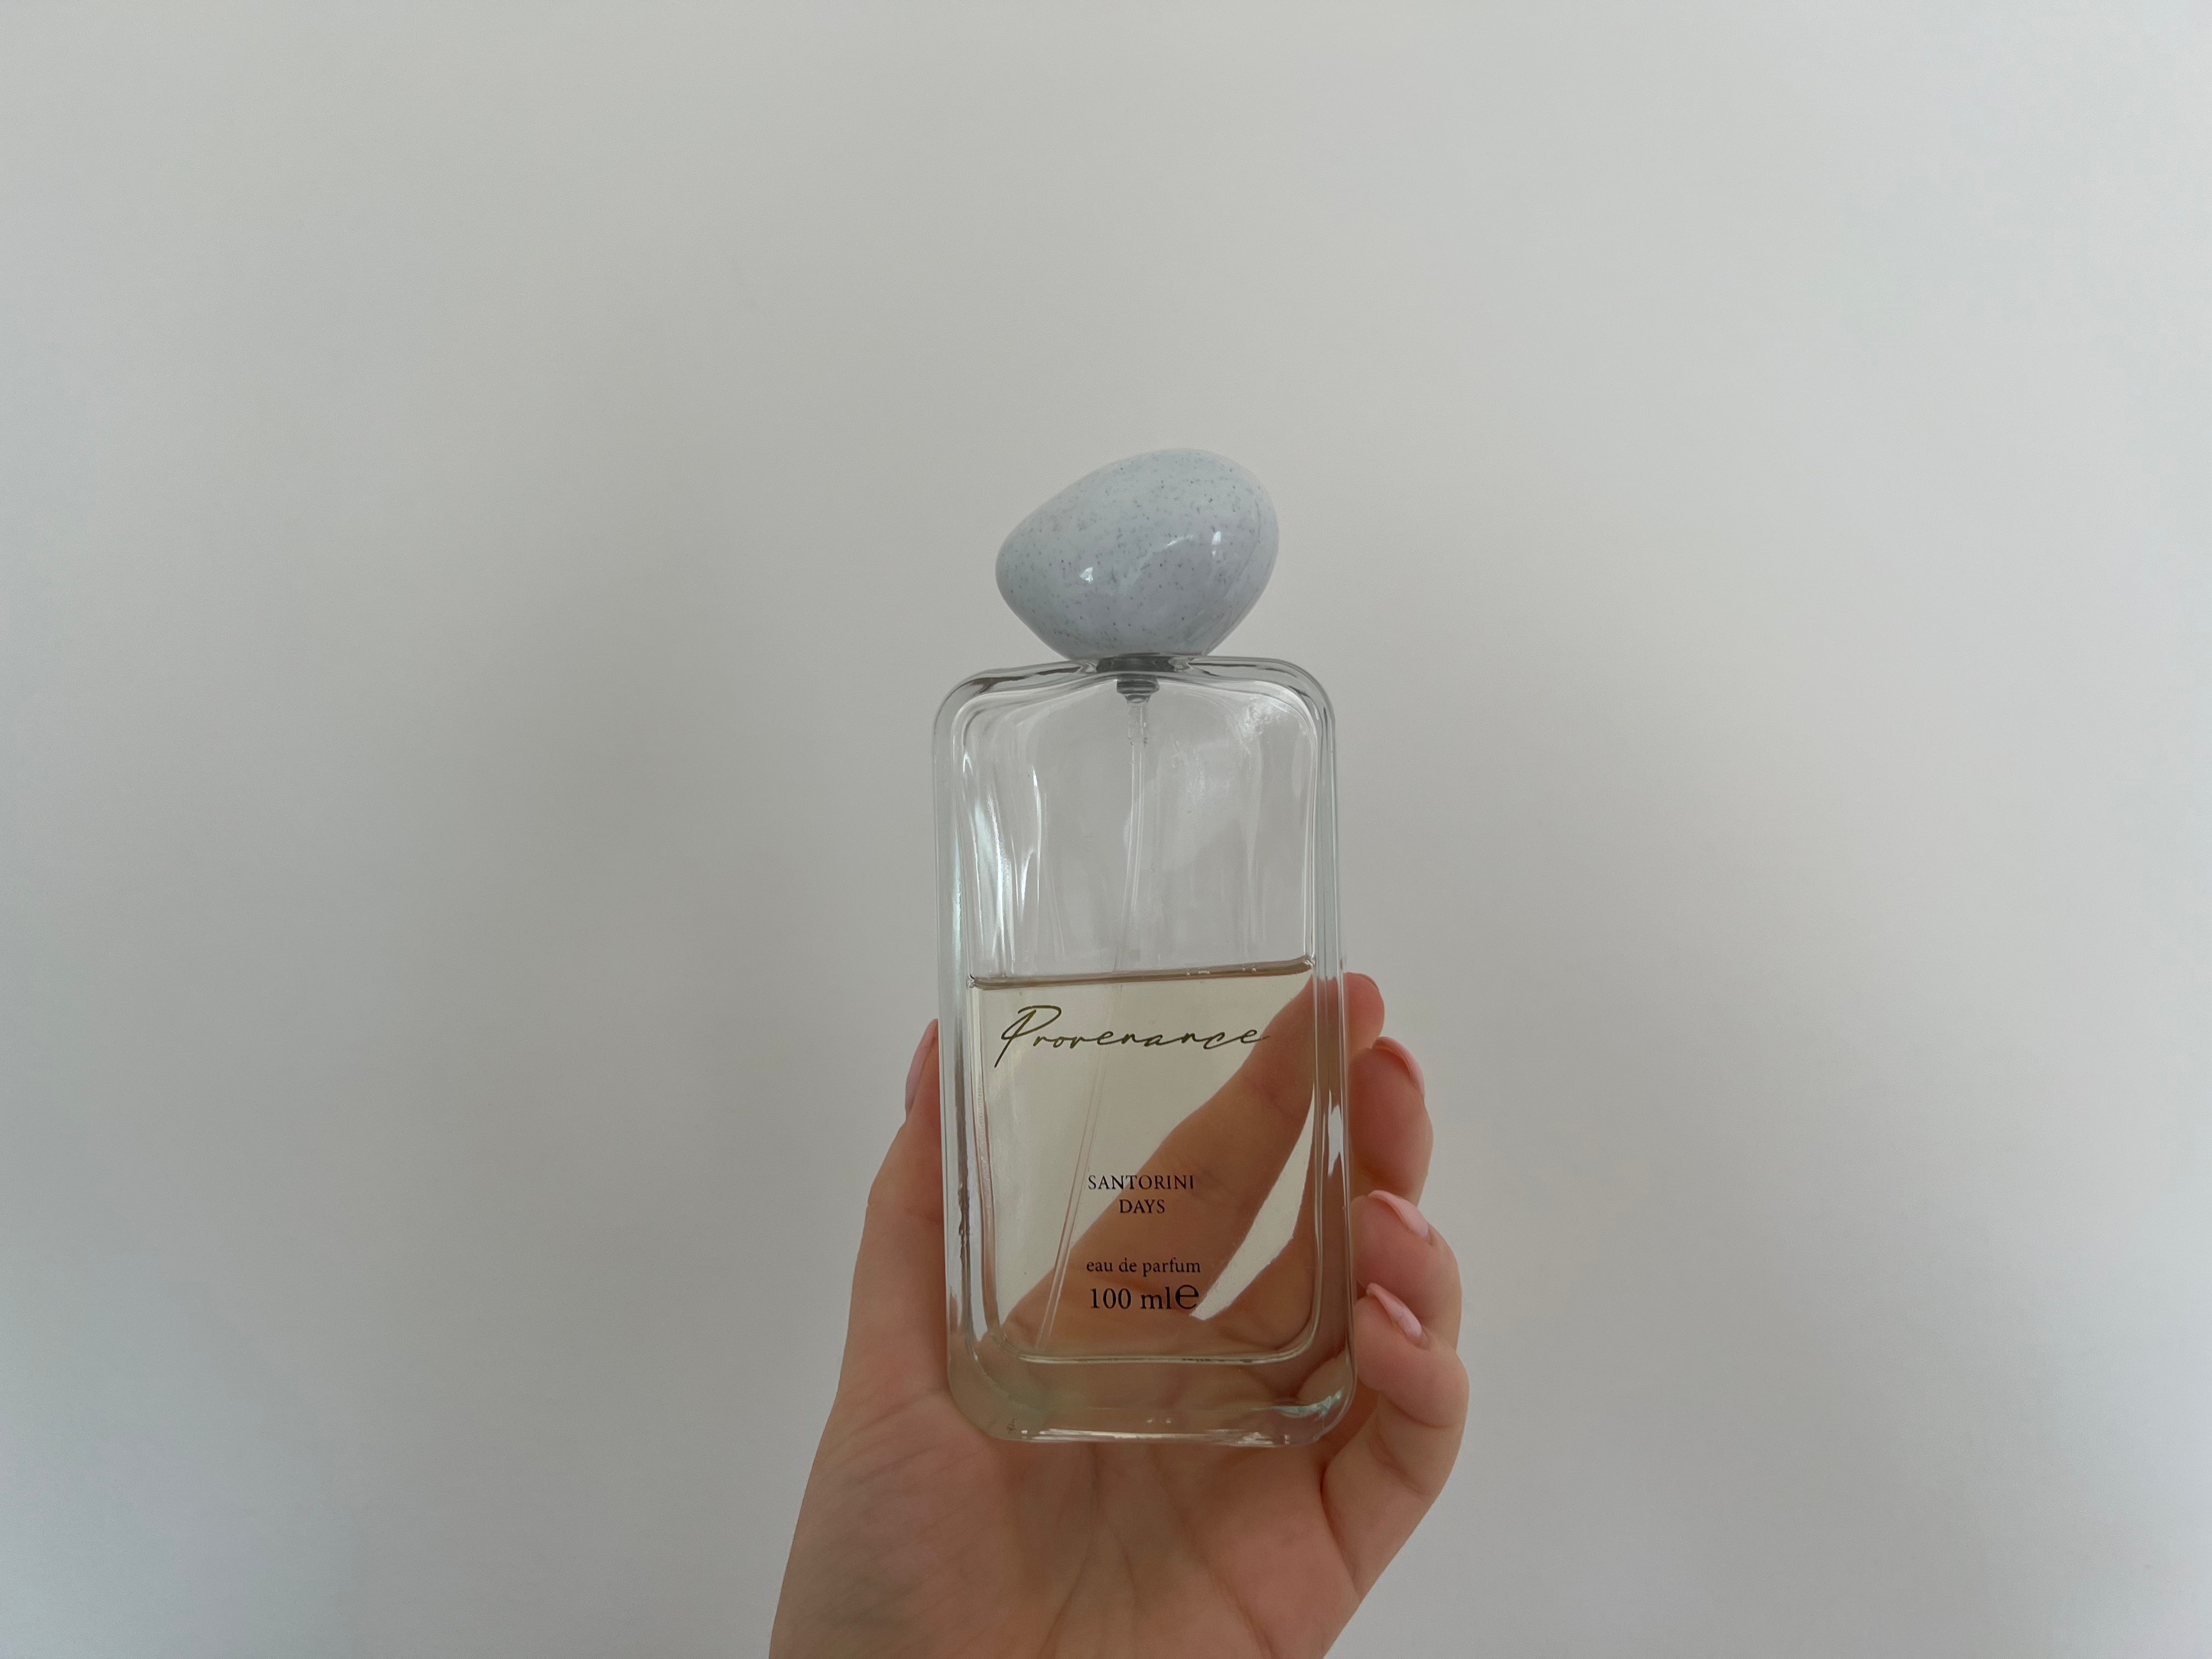 M&S Santorini days eau de parfum